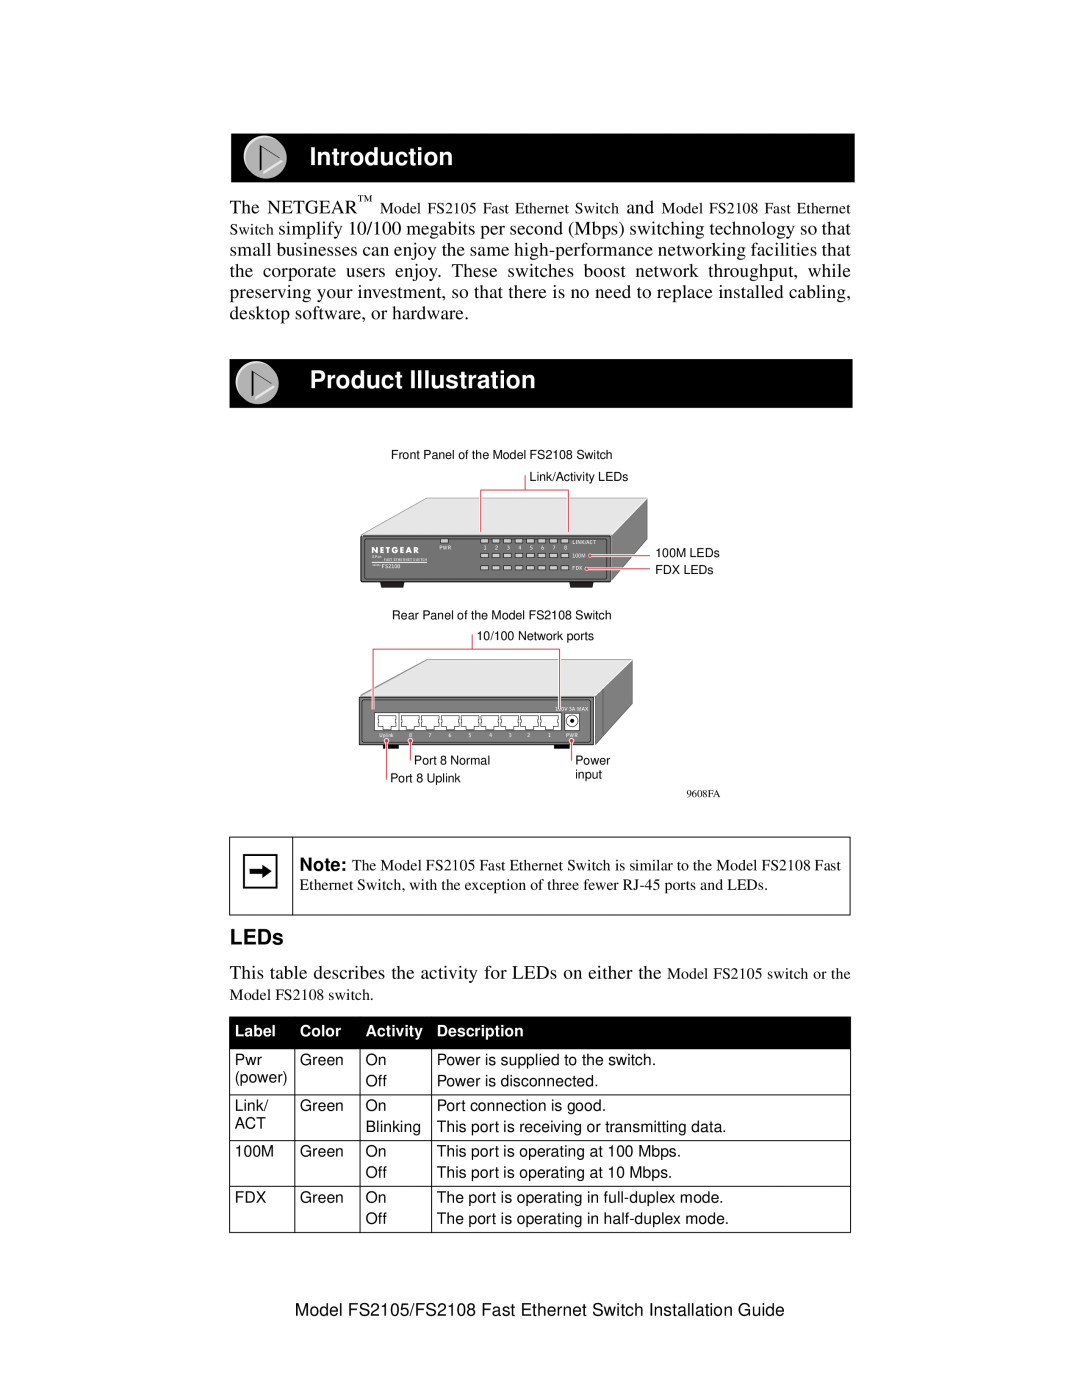 NETGEAR FS2105, FS2108 manual Introduction, Product Illustration, LEDs, The NETGEARand, Label, Color, Activity, Description 